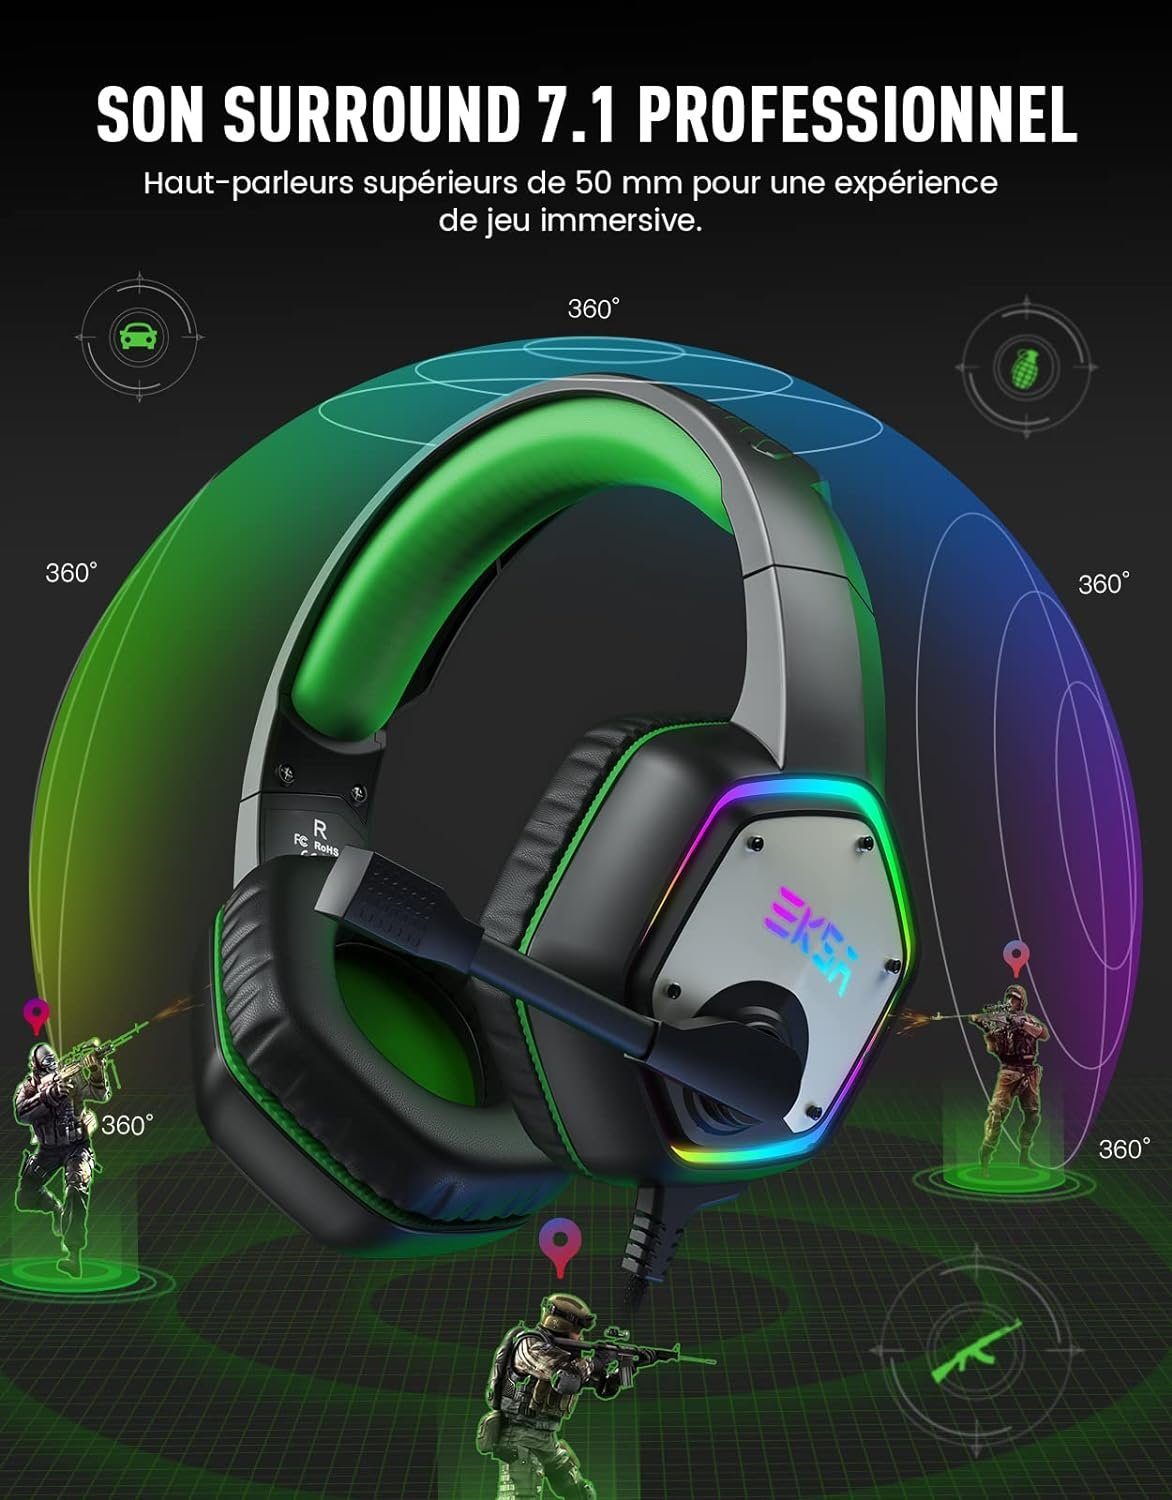 Sound Mikrofon, Surround mit Gaming-Headset dank 50-mm-Audiolautsprecher, mit Headset PC EKSA Gaming (Intensiver Gamer Sound) Surround Bass Headset